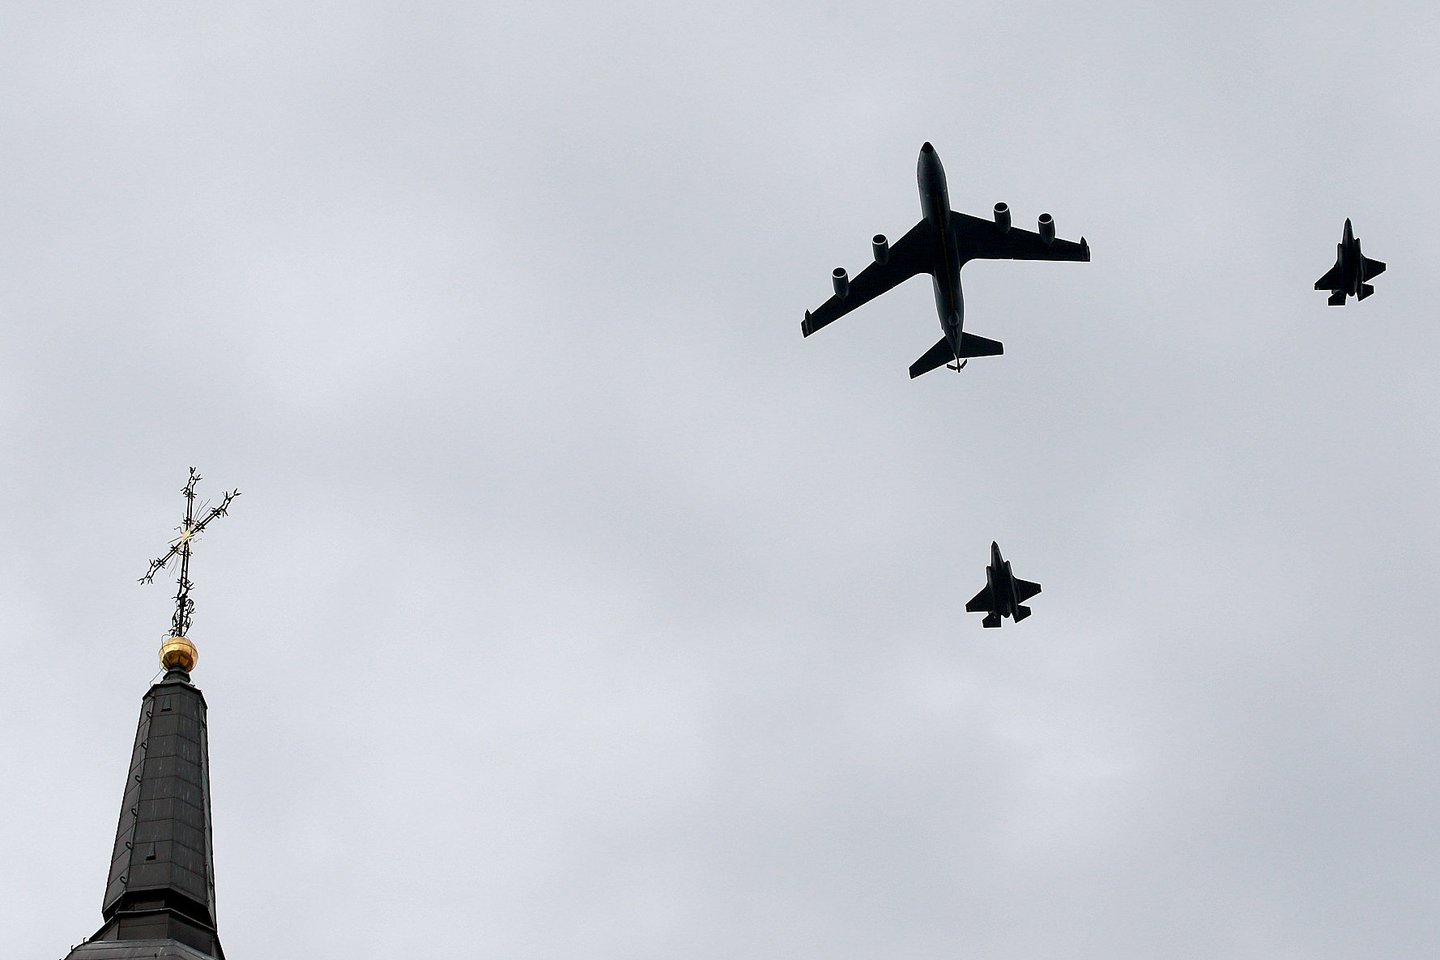  Ketvirtadienio pavakarę du Jungtinių Amerikos Valstijų karinių oro pajėgų naikintuvai F-35 ir strateginis kuro papildymo ore orlaivis „KC-135 Stratotanker“ praskrido virš Vilniaus.<br> R. Danisevičiaus nuotr.